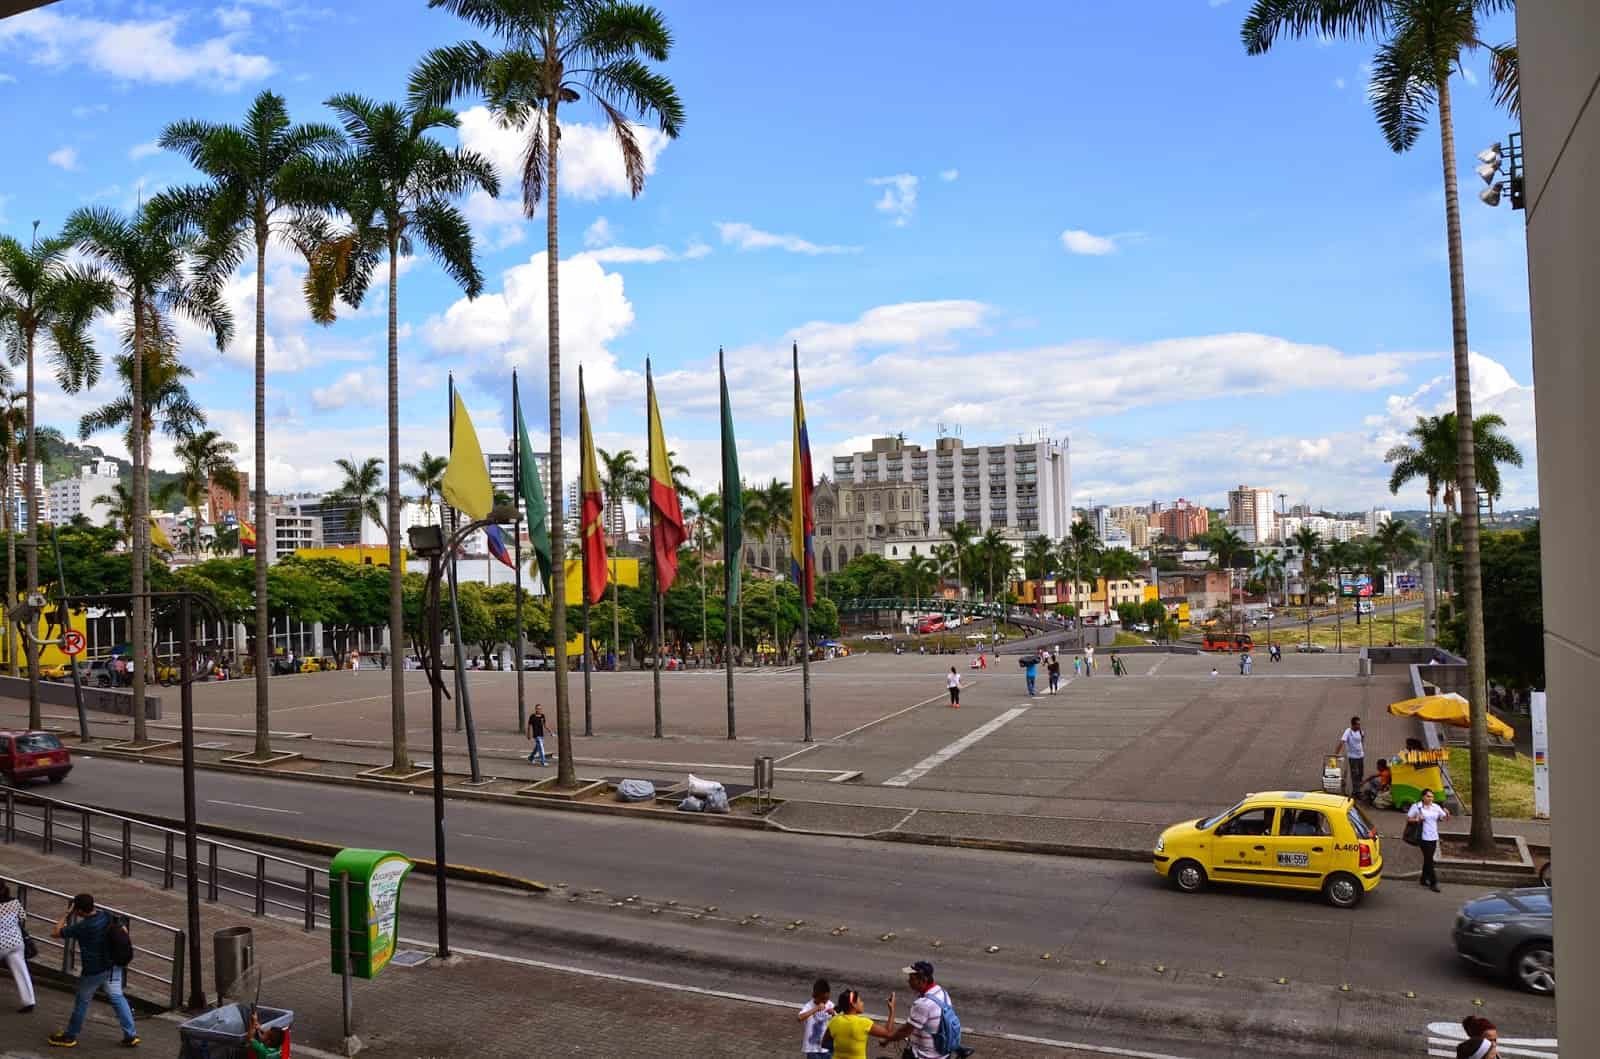 Plaza Victoria in Pereira, Risaralda, Colombia